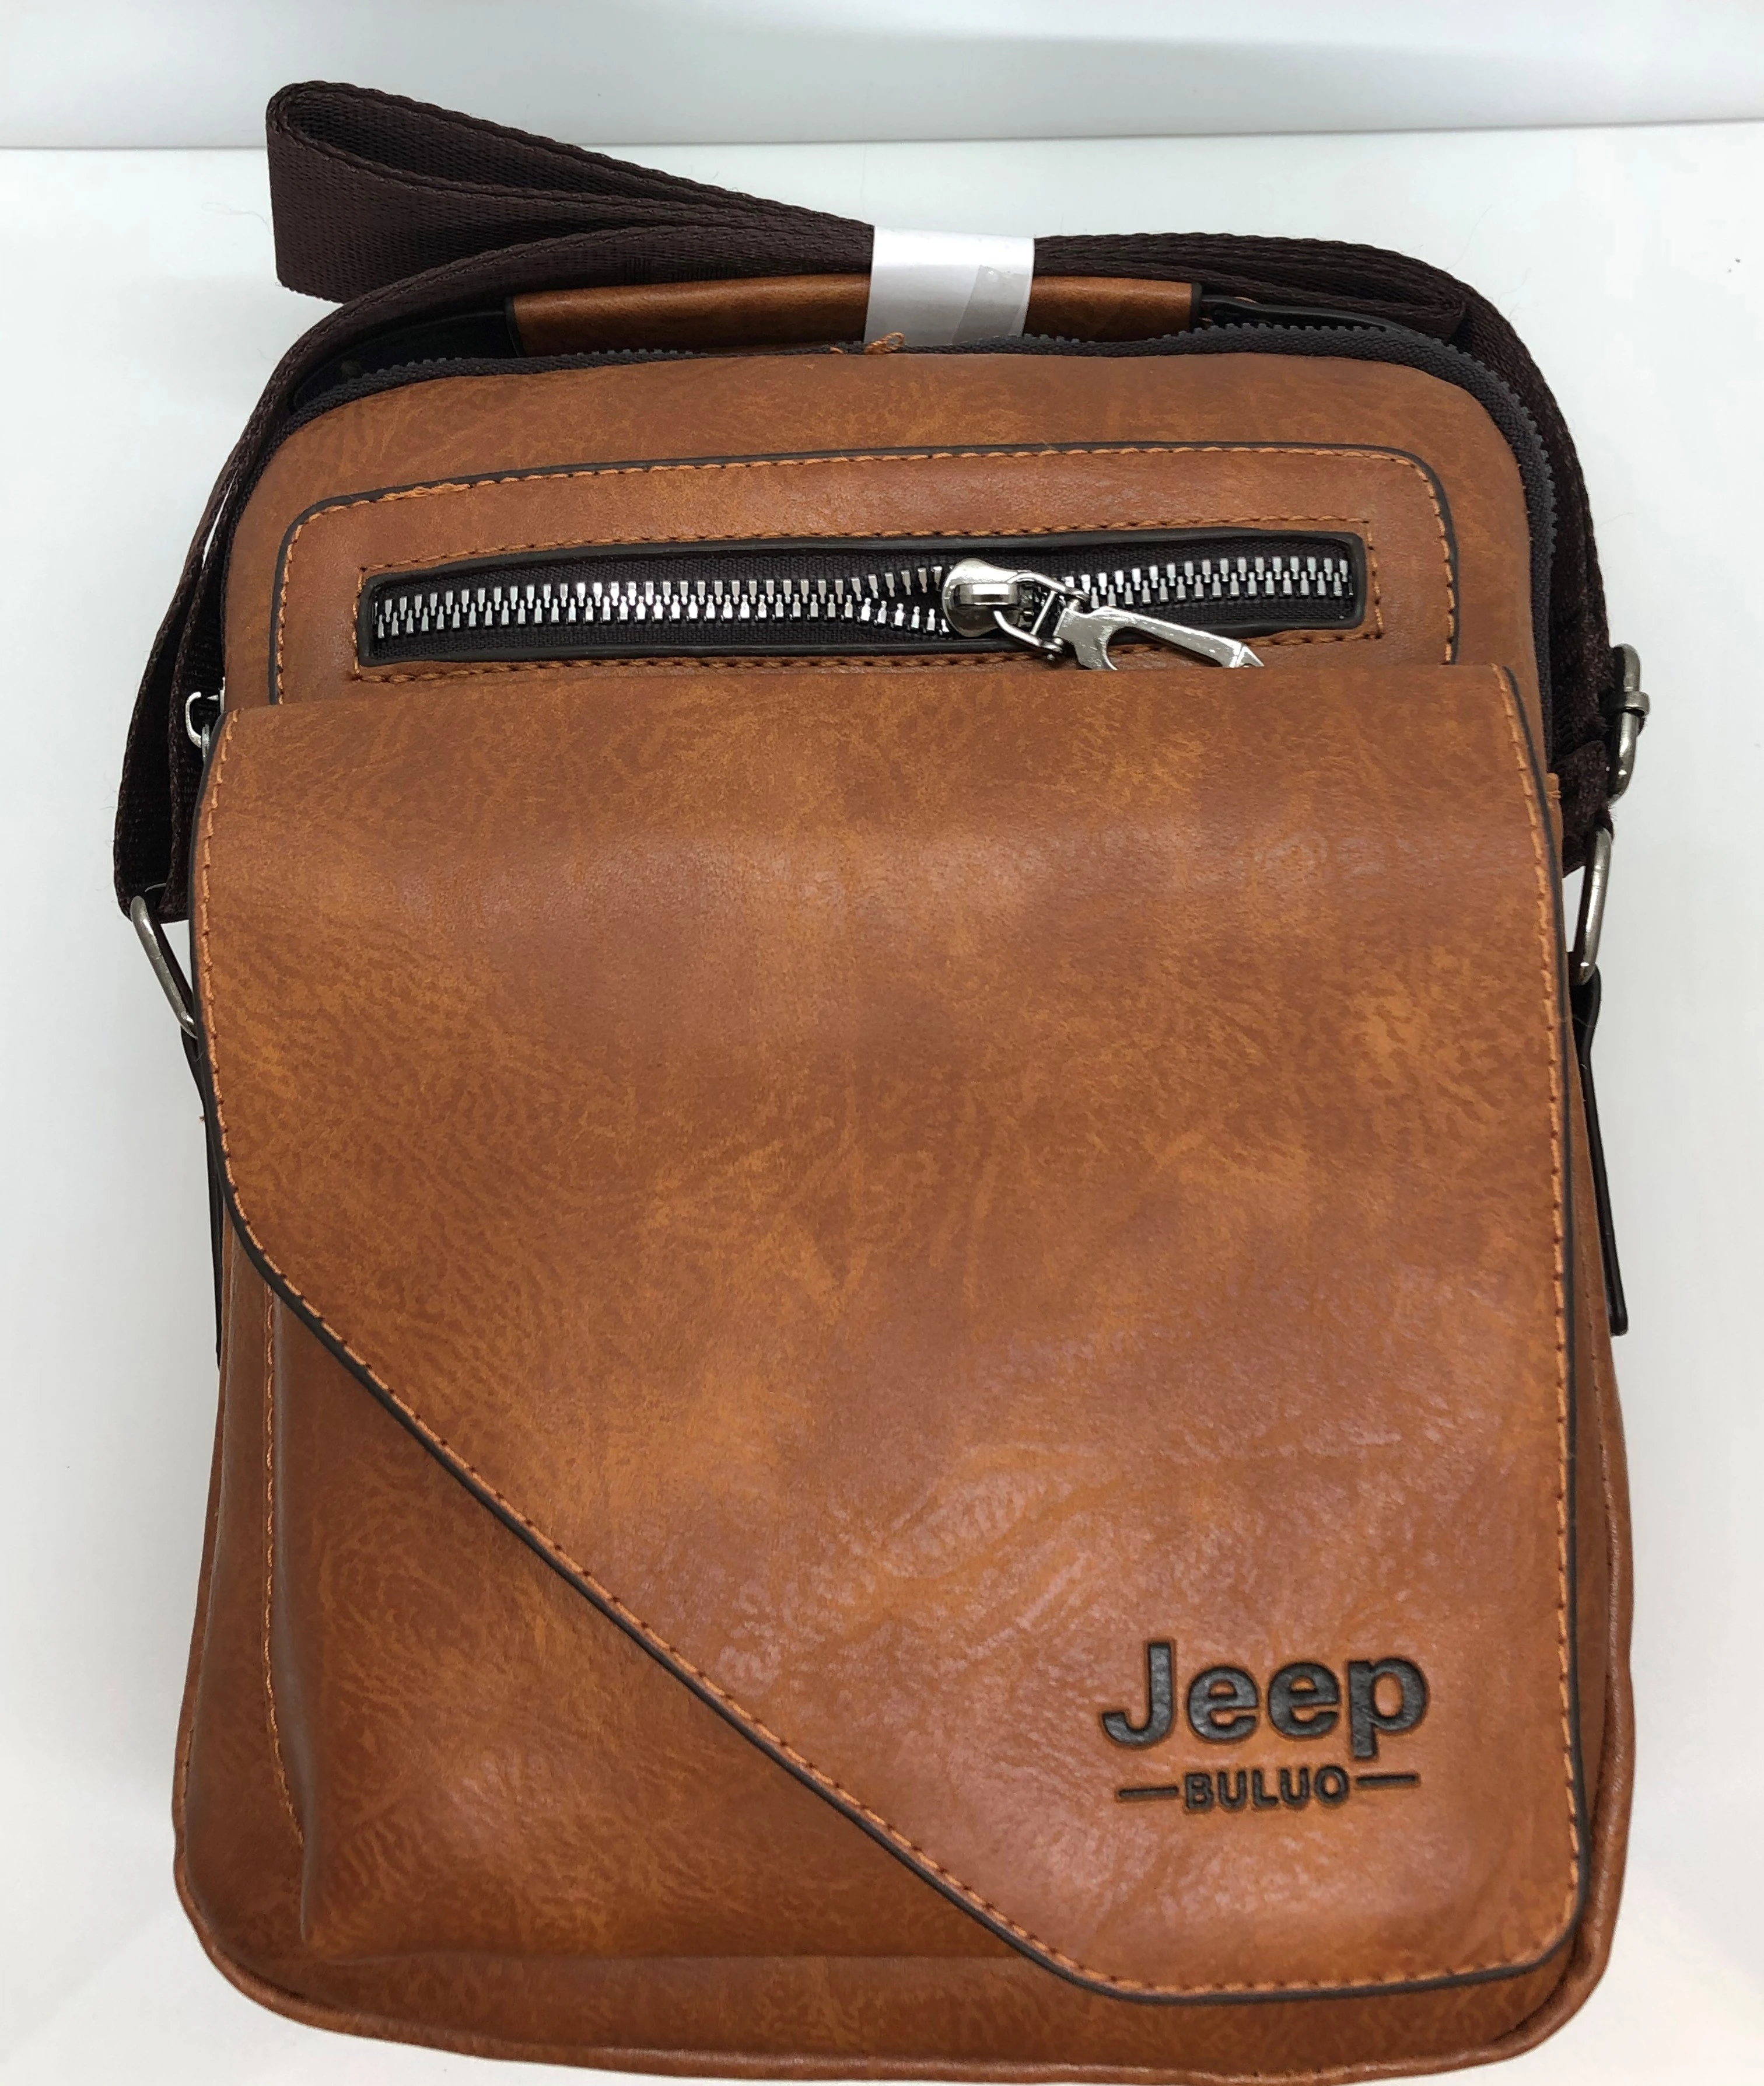 Jeep cross shoulder bag in light brown color